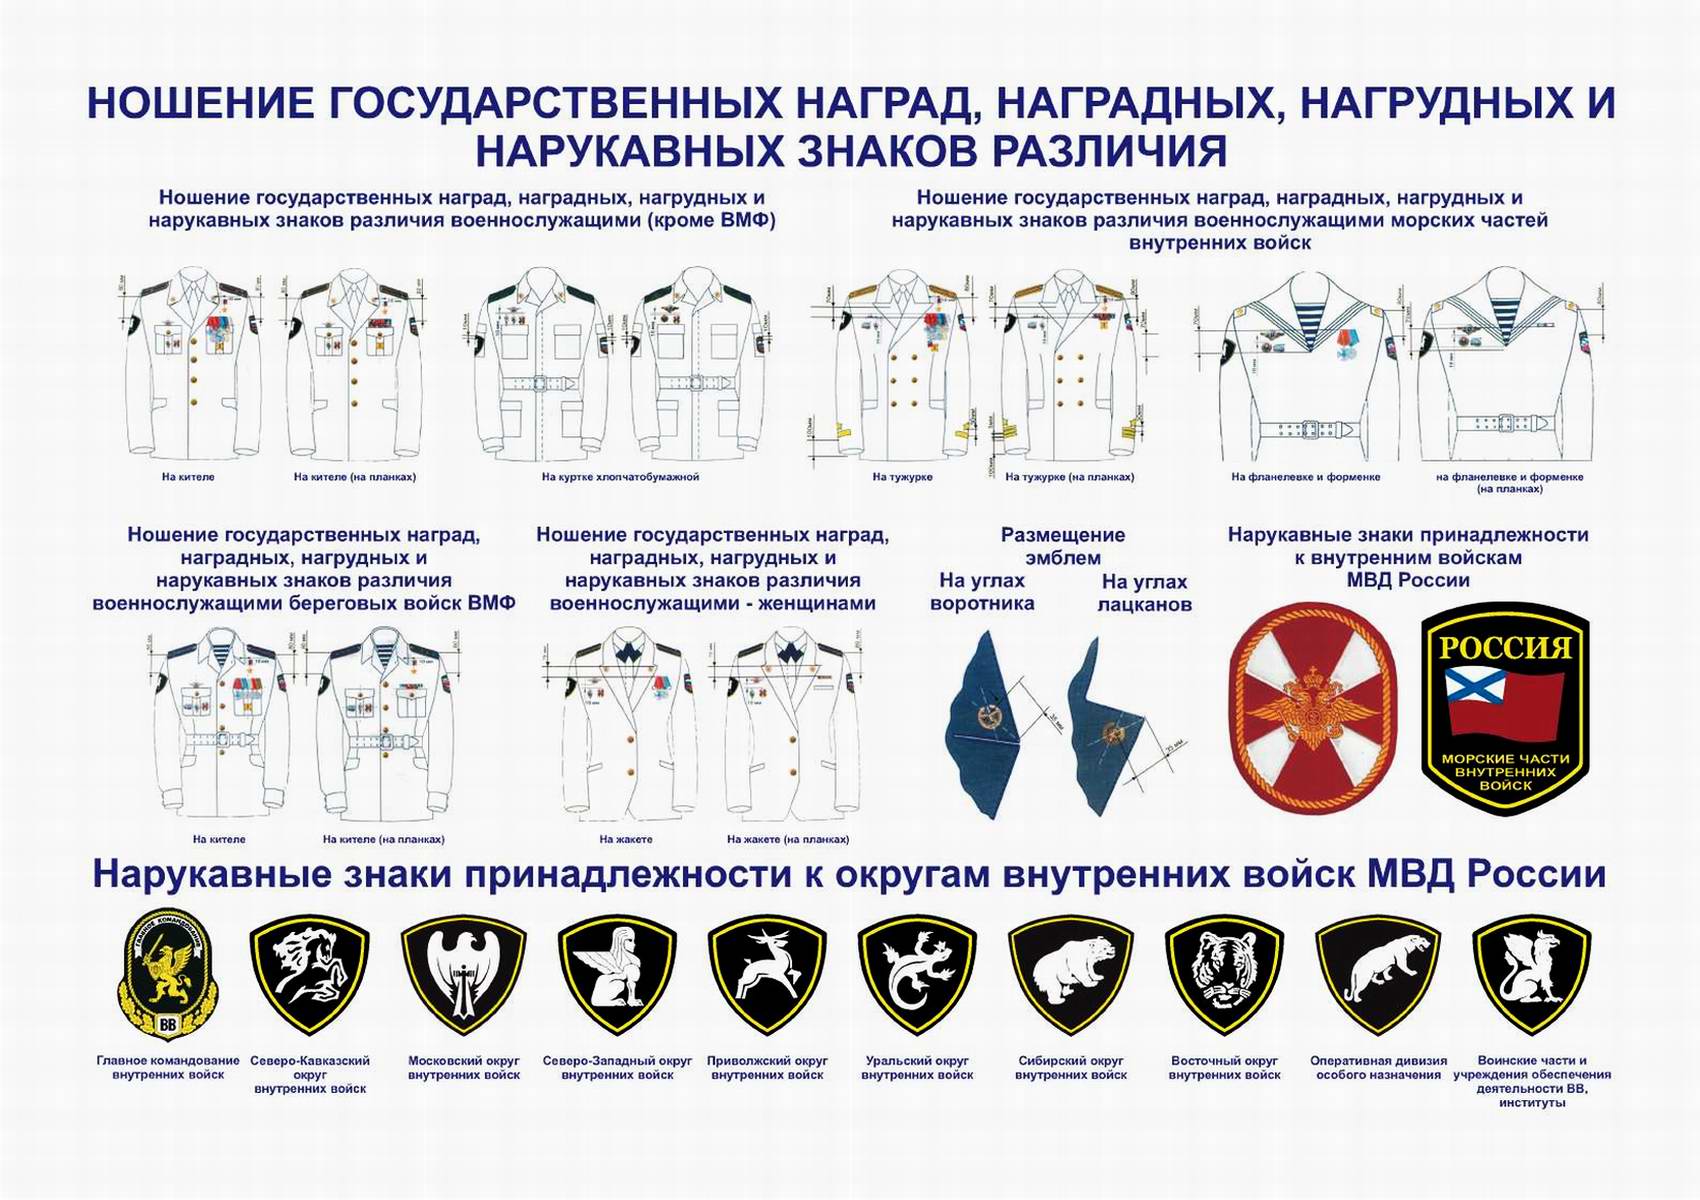 Ношение государственных наград, наградных, нагрудных и нарукавных знаков различия на униформе Внутренних войск МВД РФ